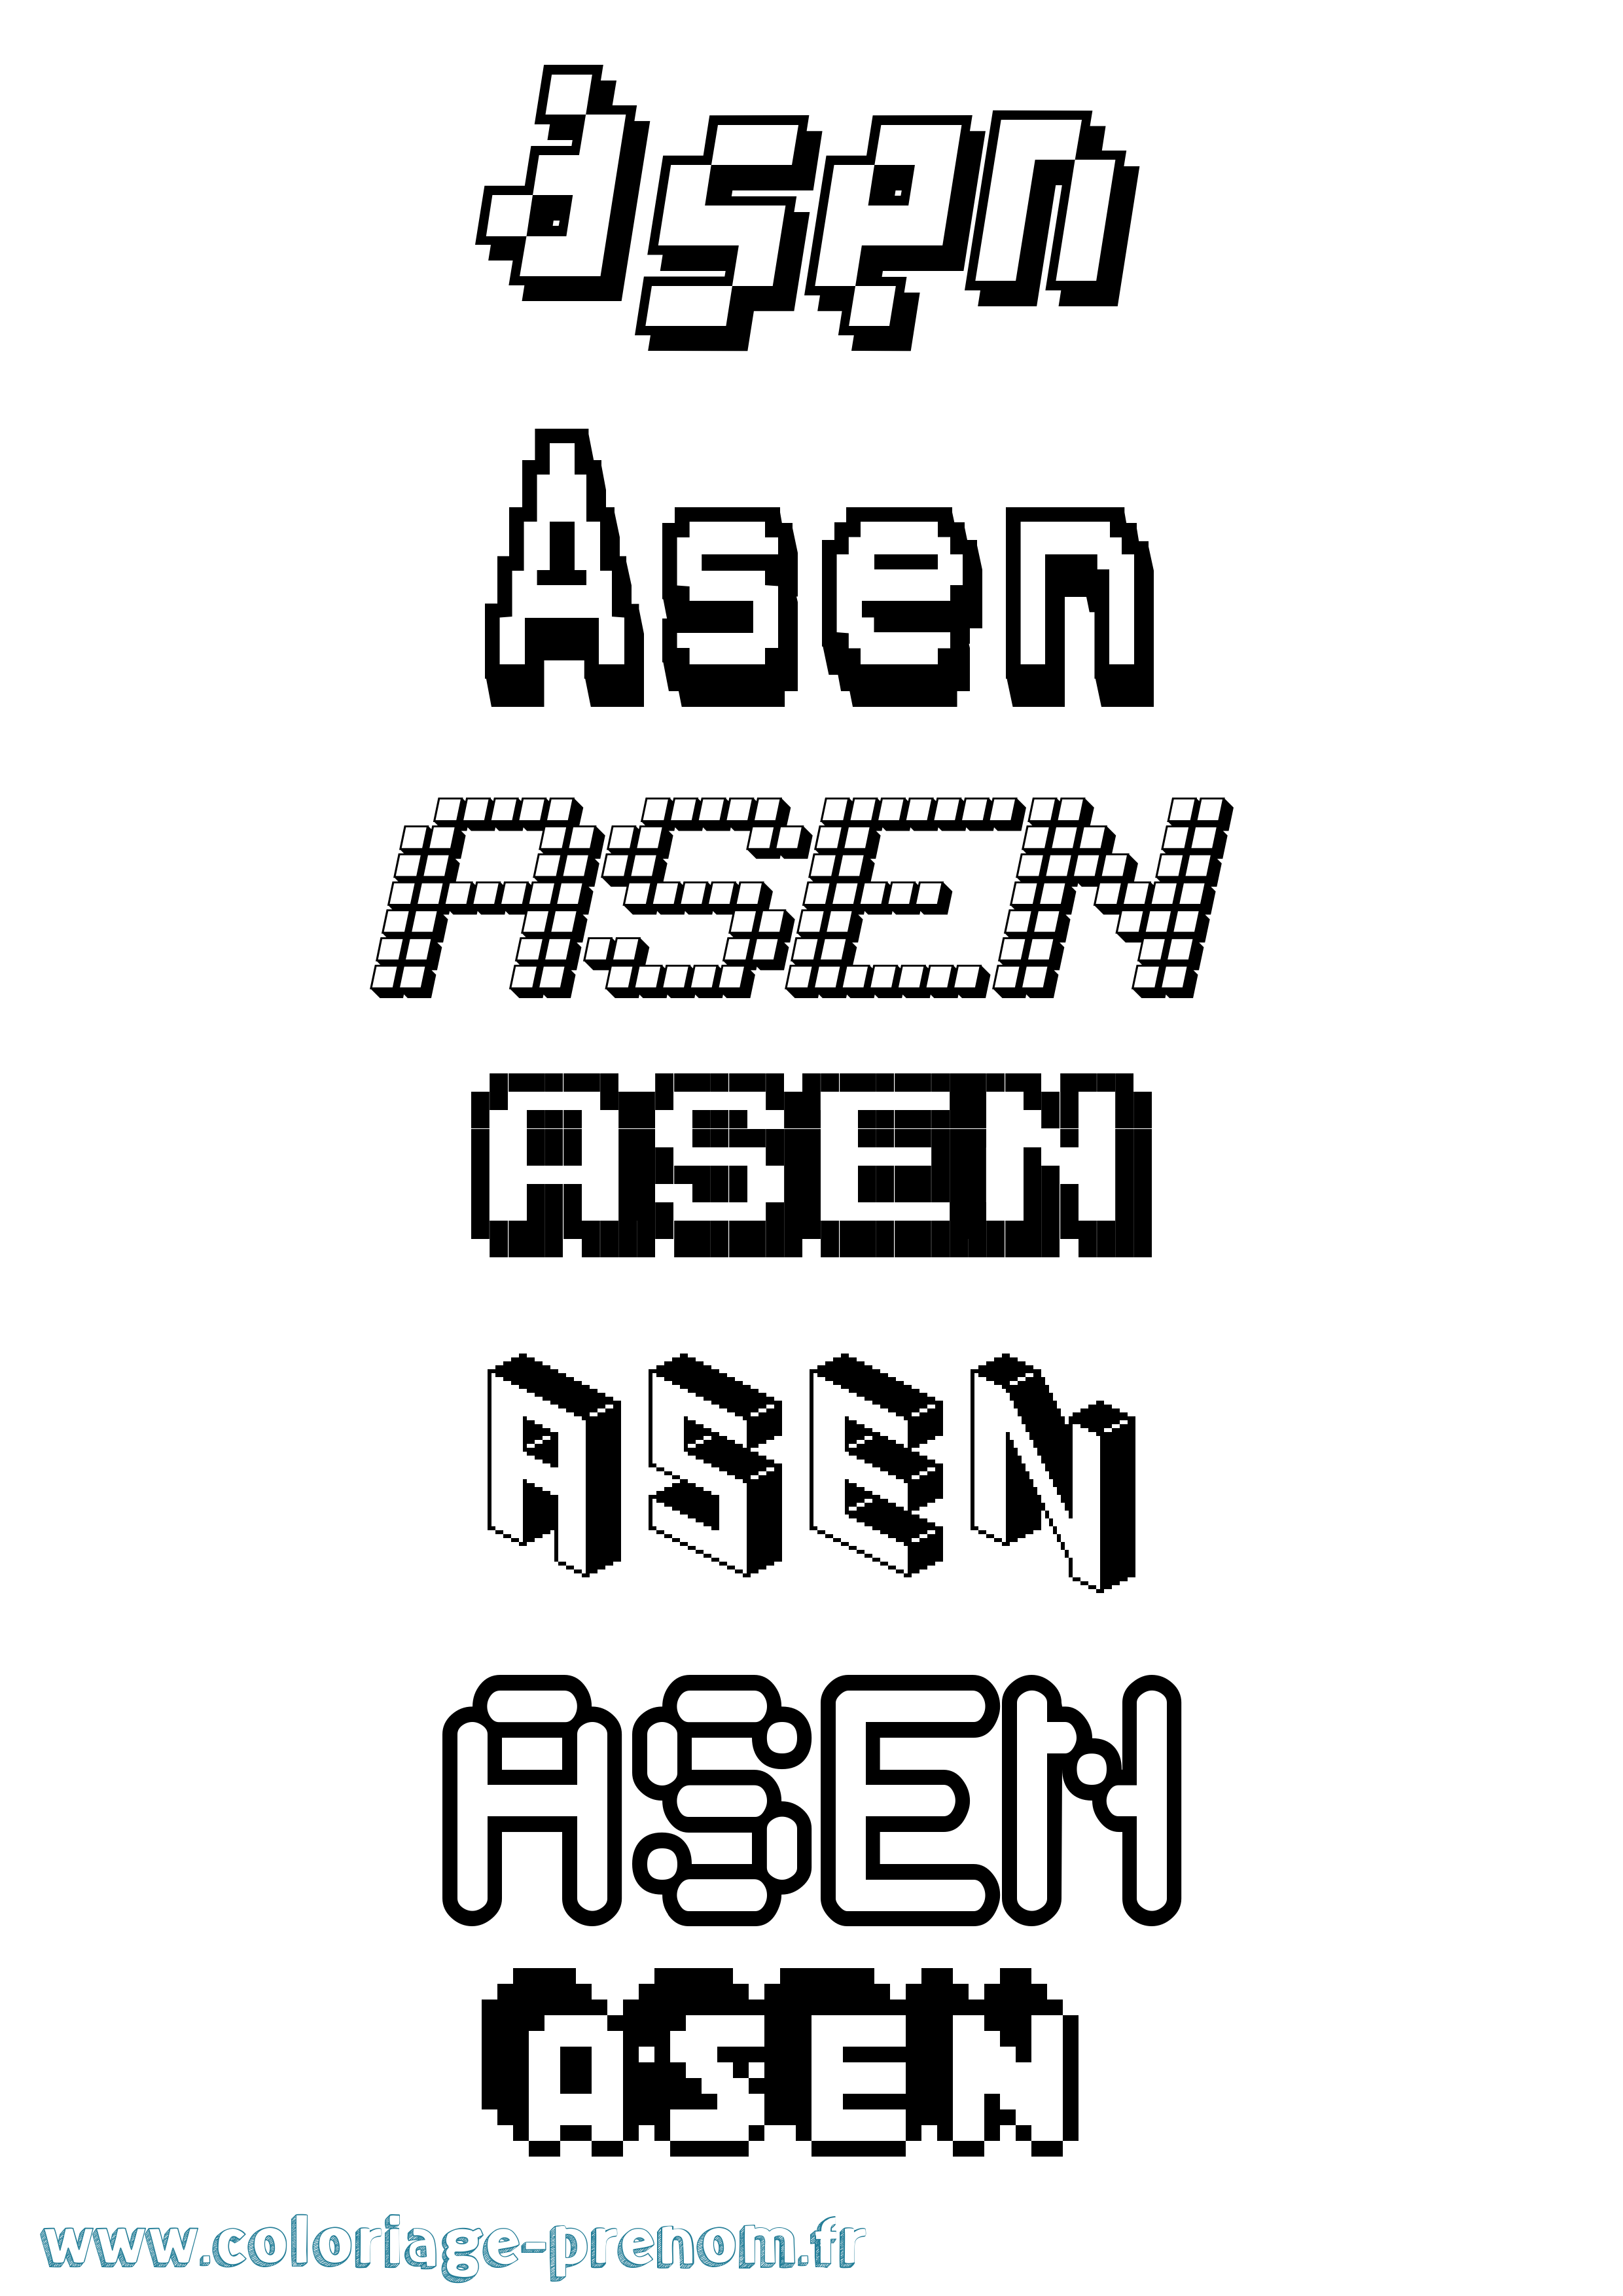 Coloriage prénom Asen Pixel